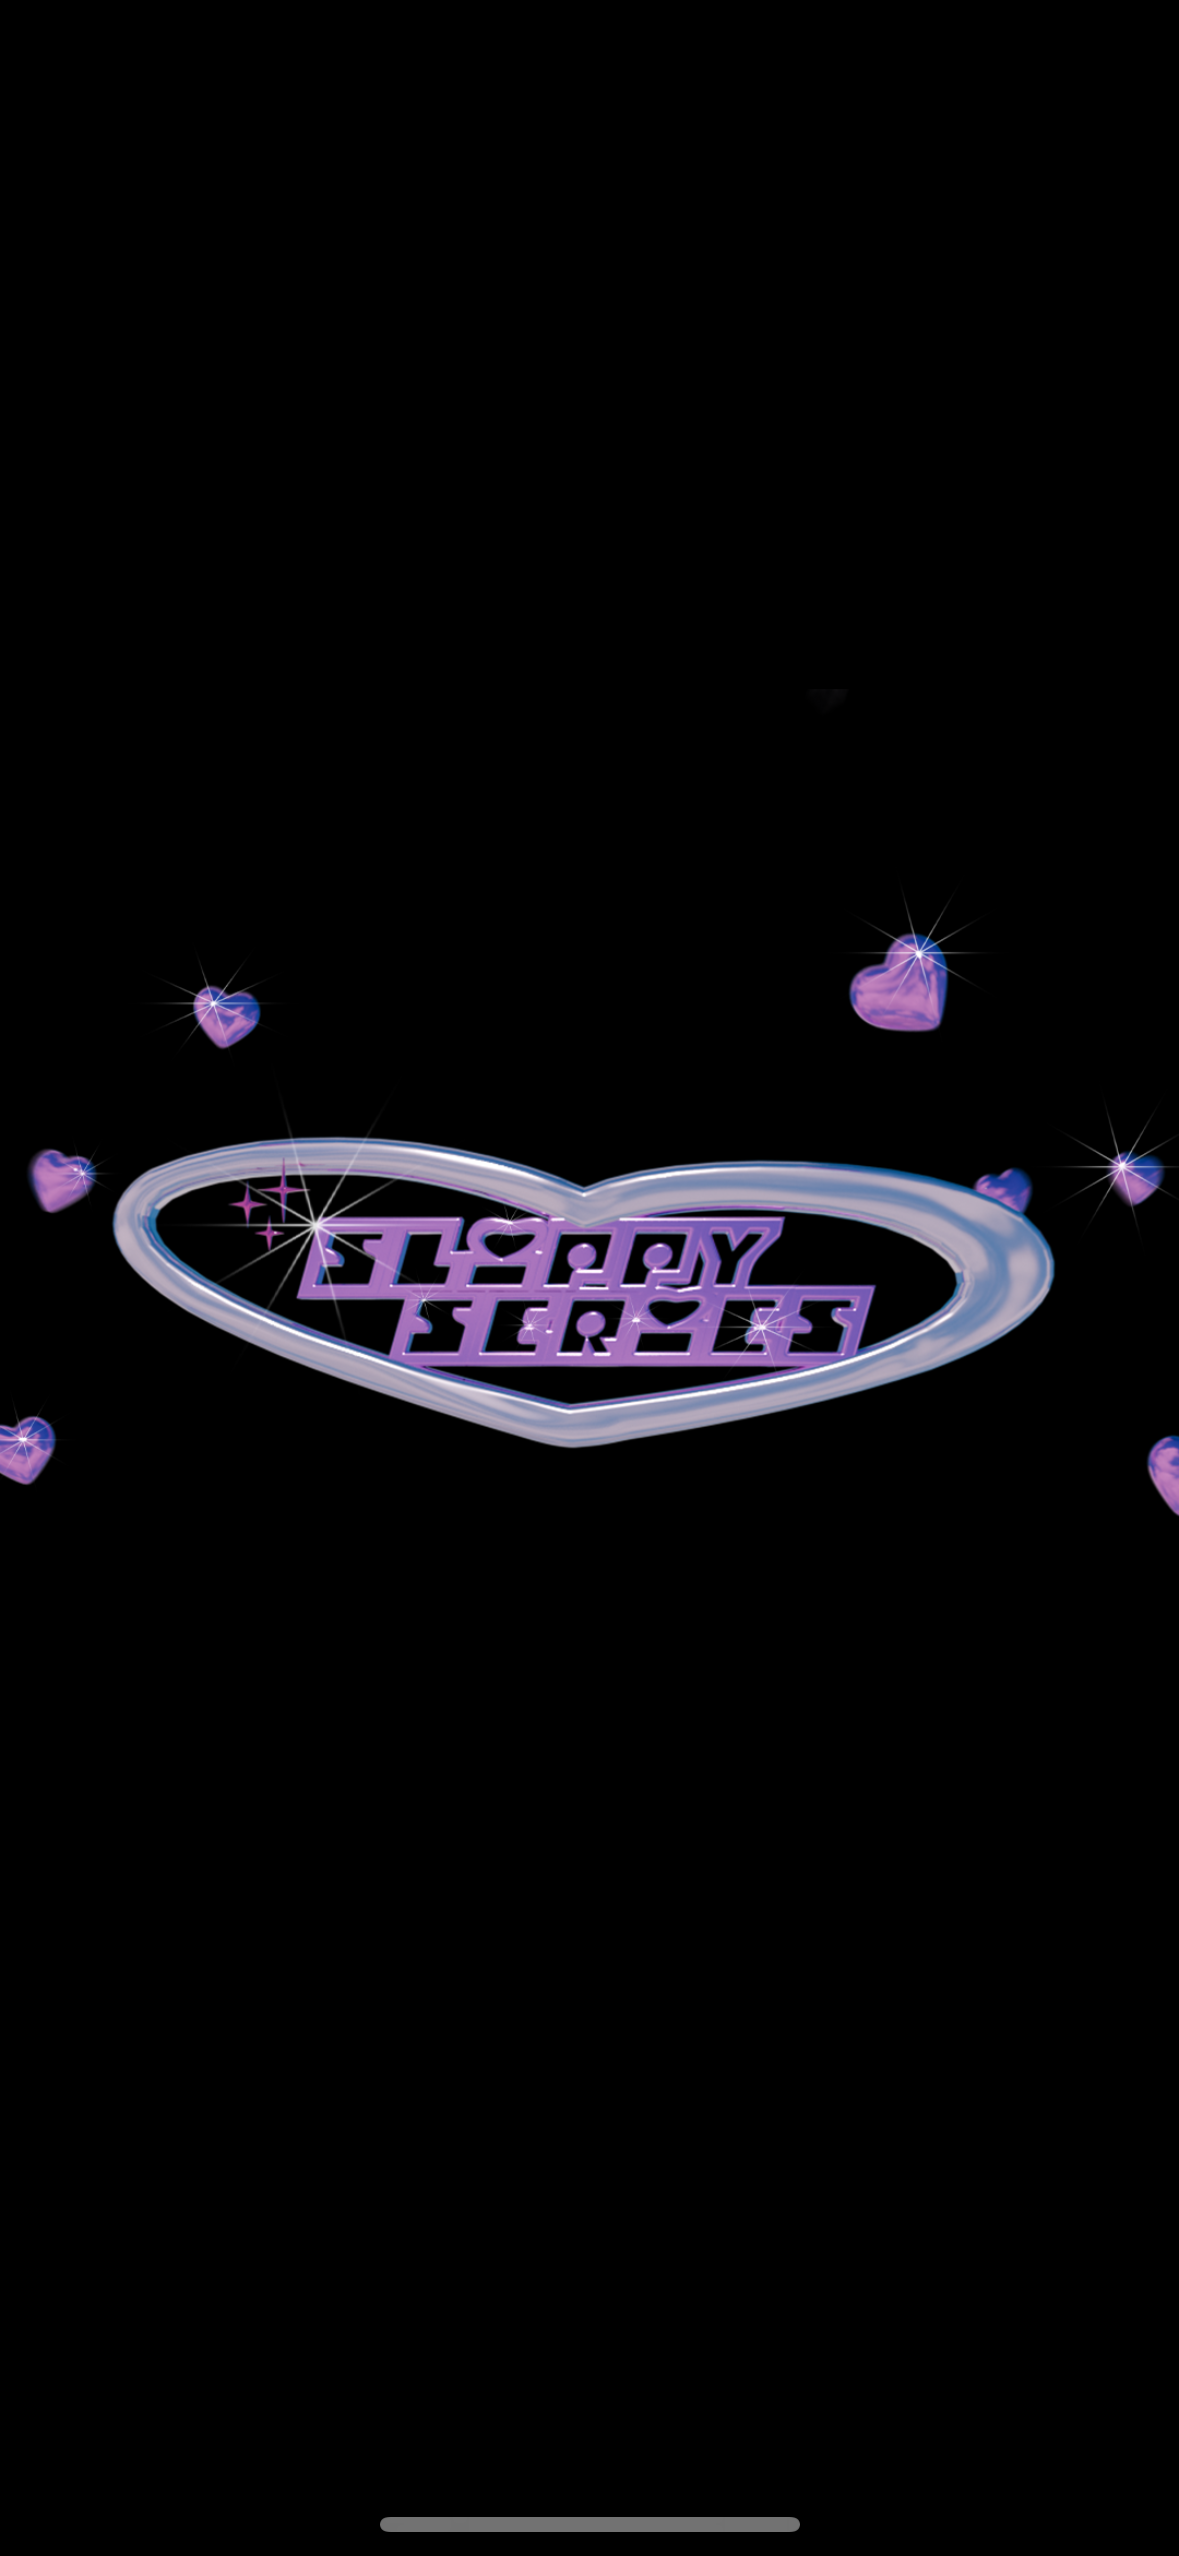 SLIPPY XOXO 2ND EDITION <3 with davyboi, Jacky Ickx, Lenny Fuck, Panteros666 - フライヤー表